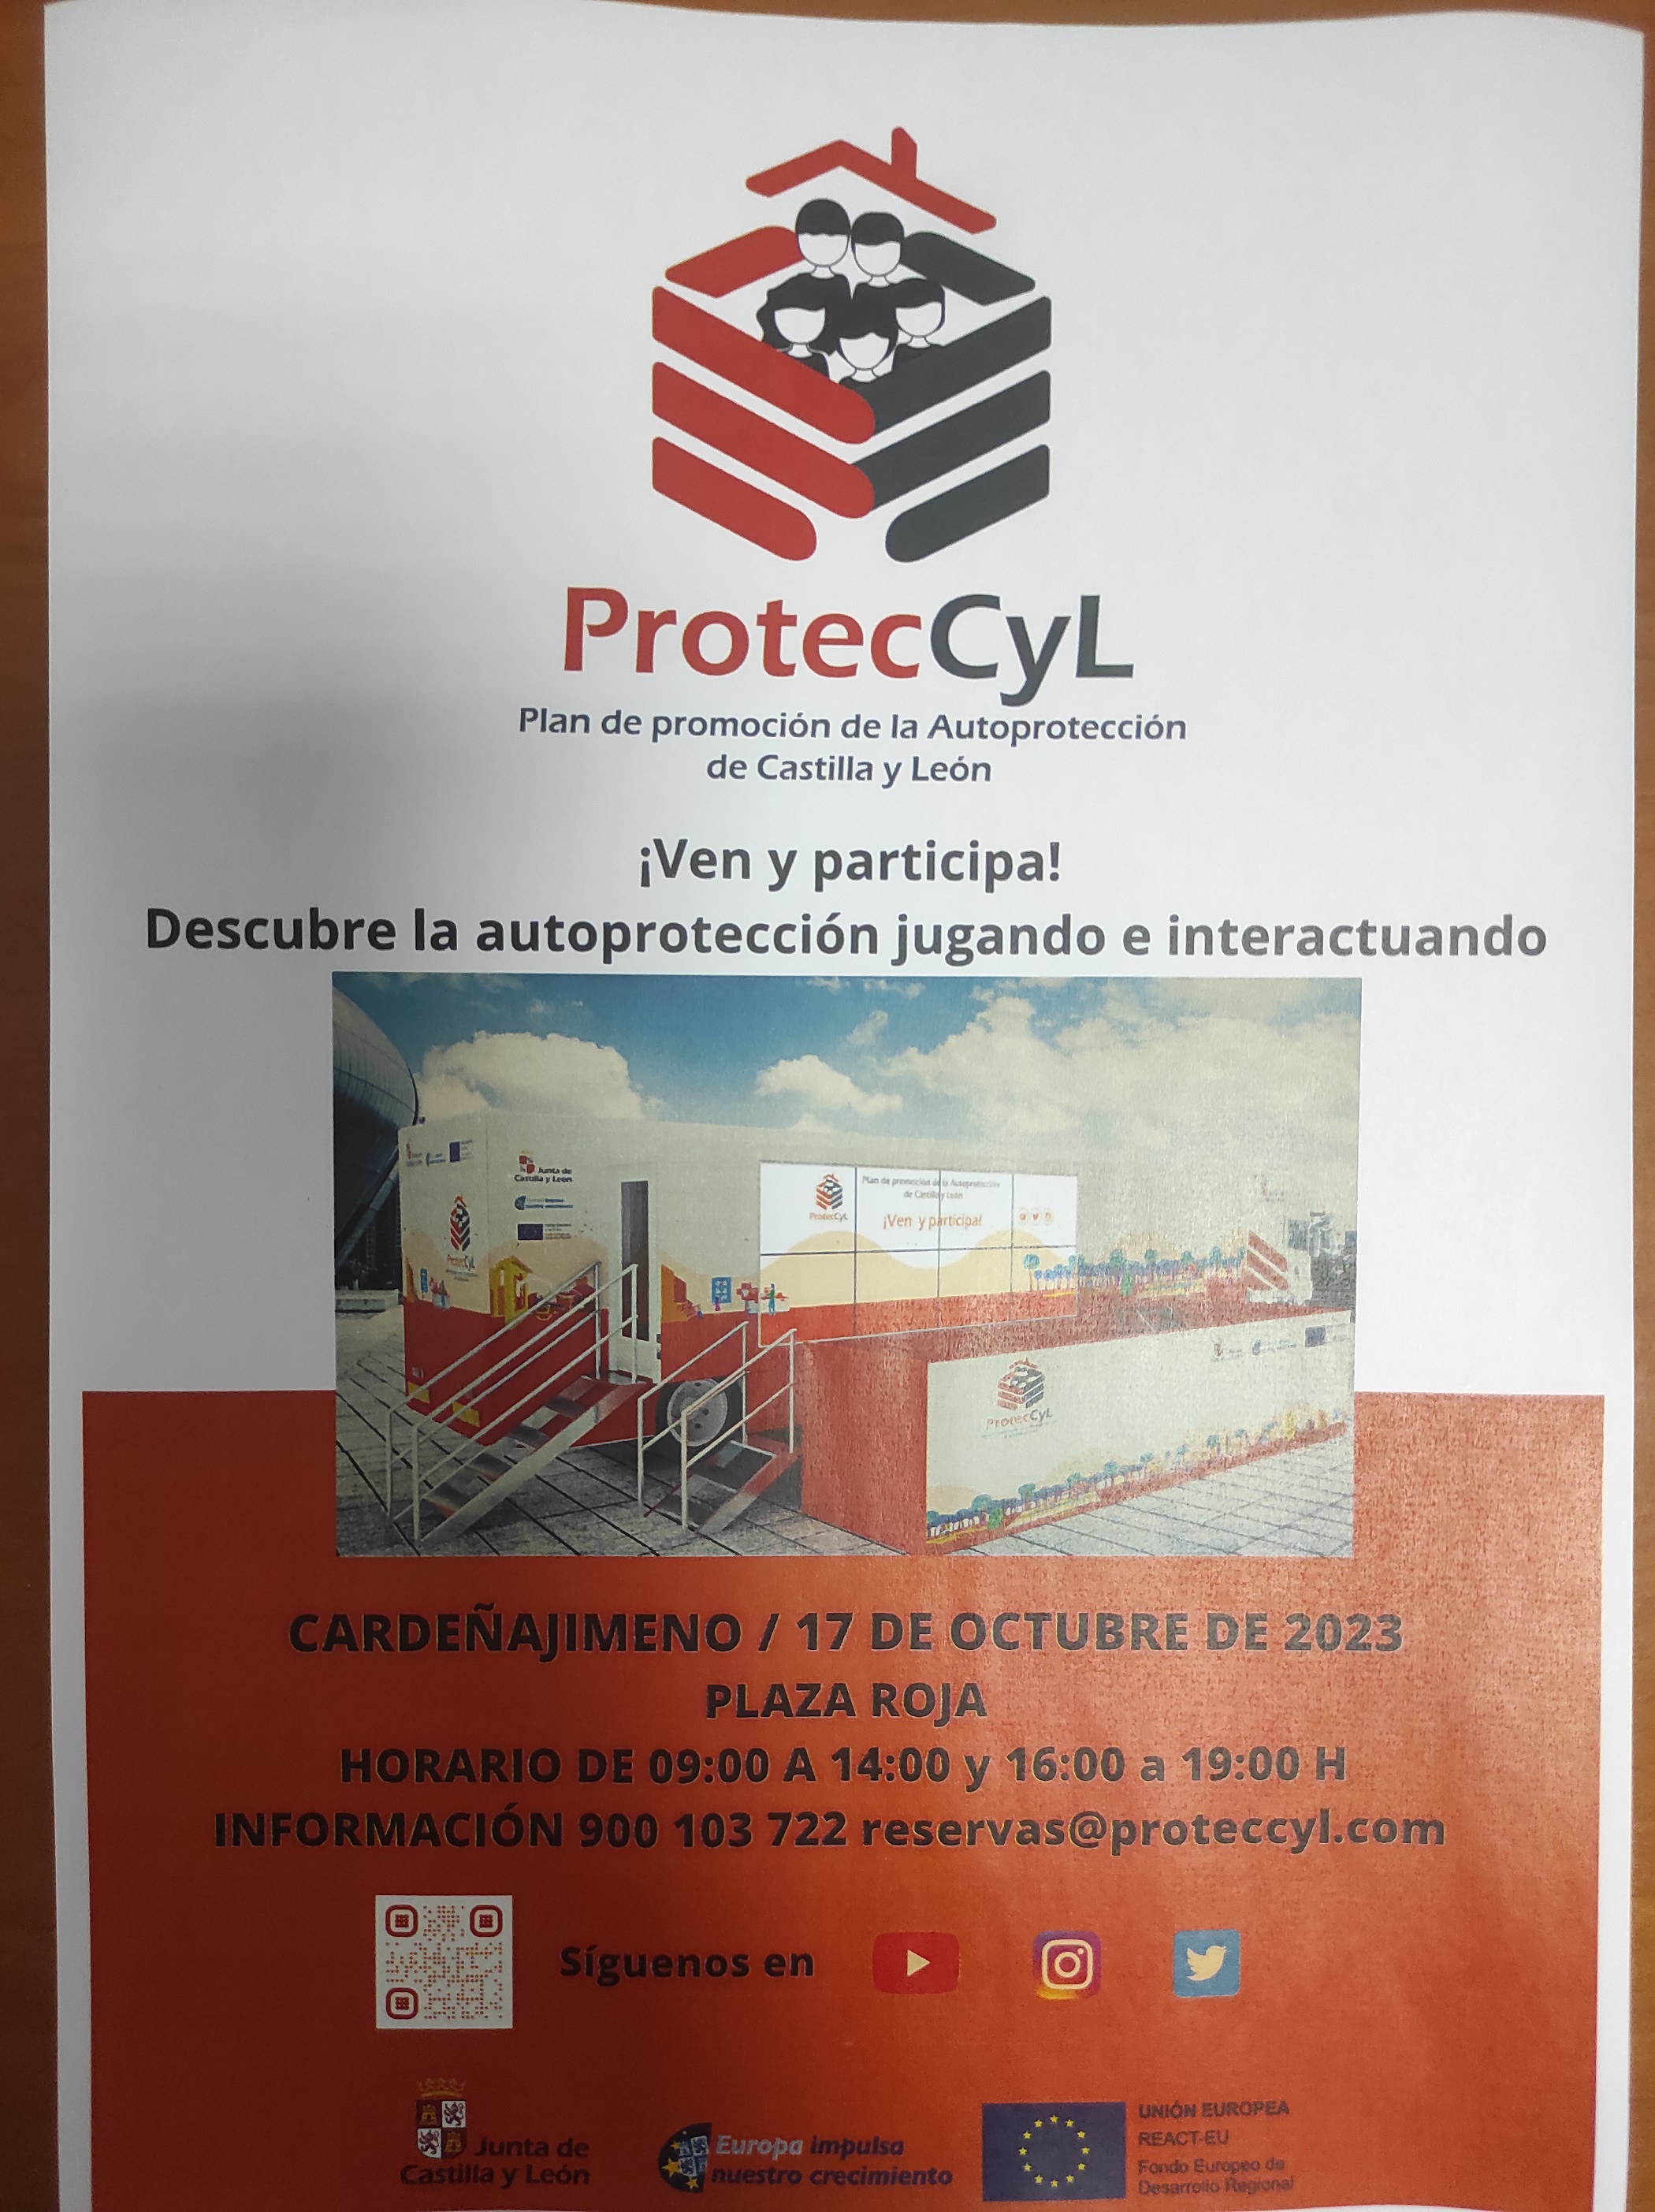 ProtecCyL: PLAN DE PROMOCION DE LA AUTOPROTECCIÓN DE CASTILLA Y LEON.